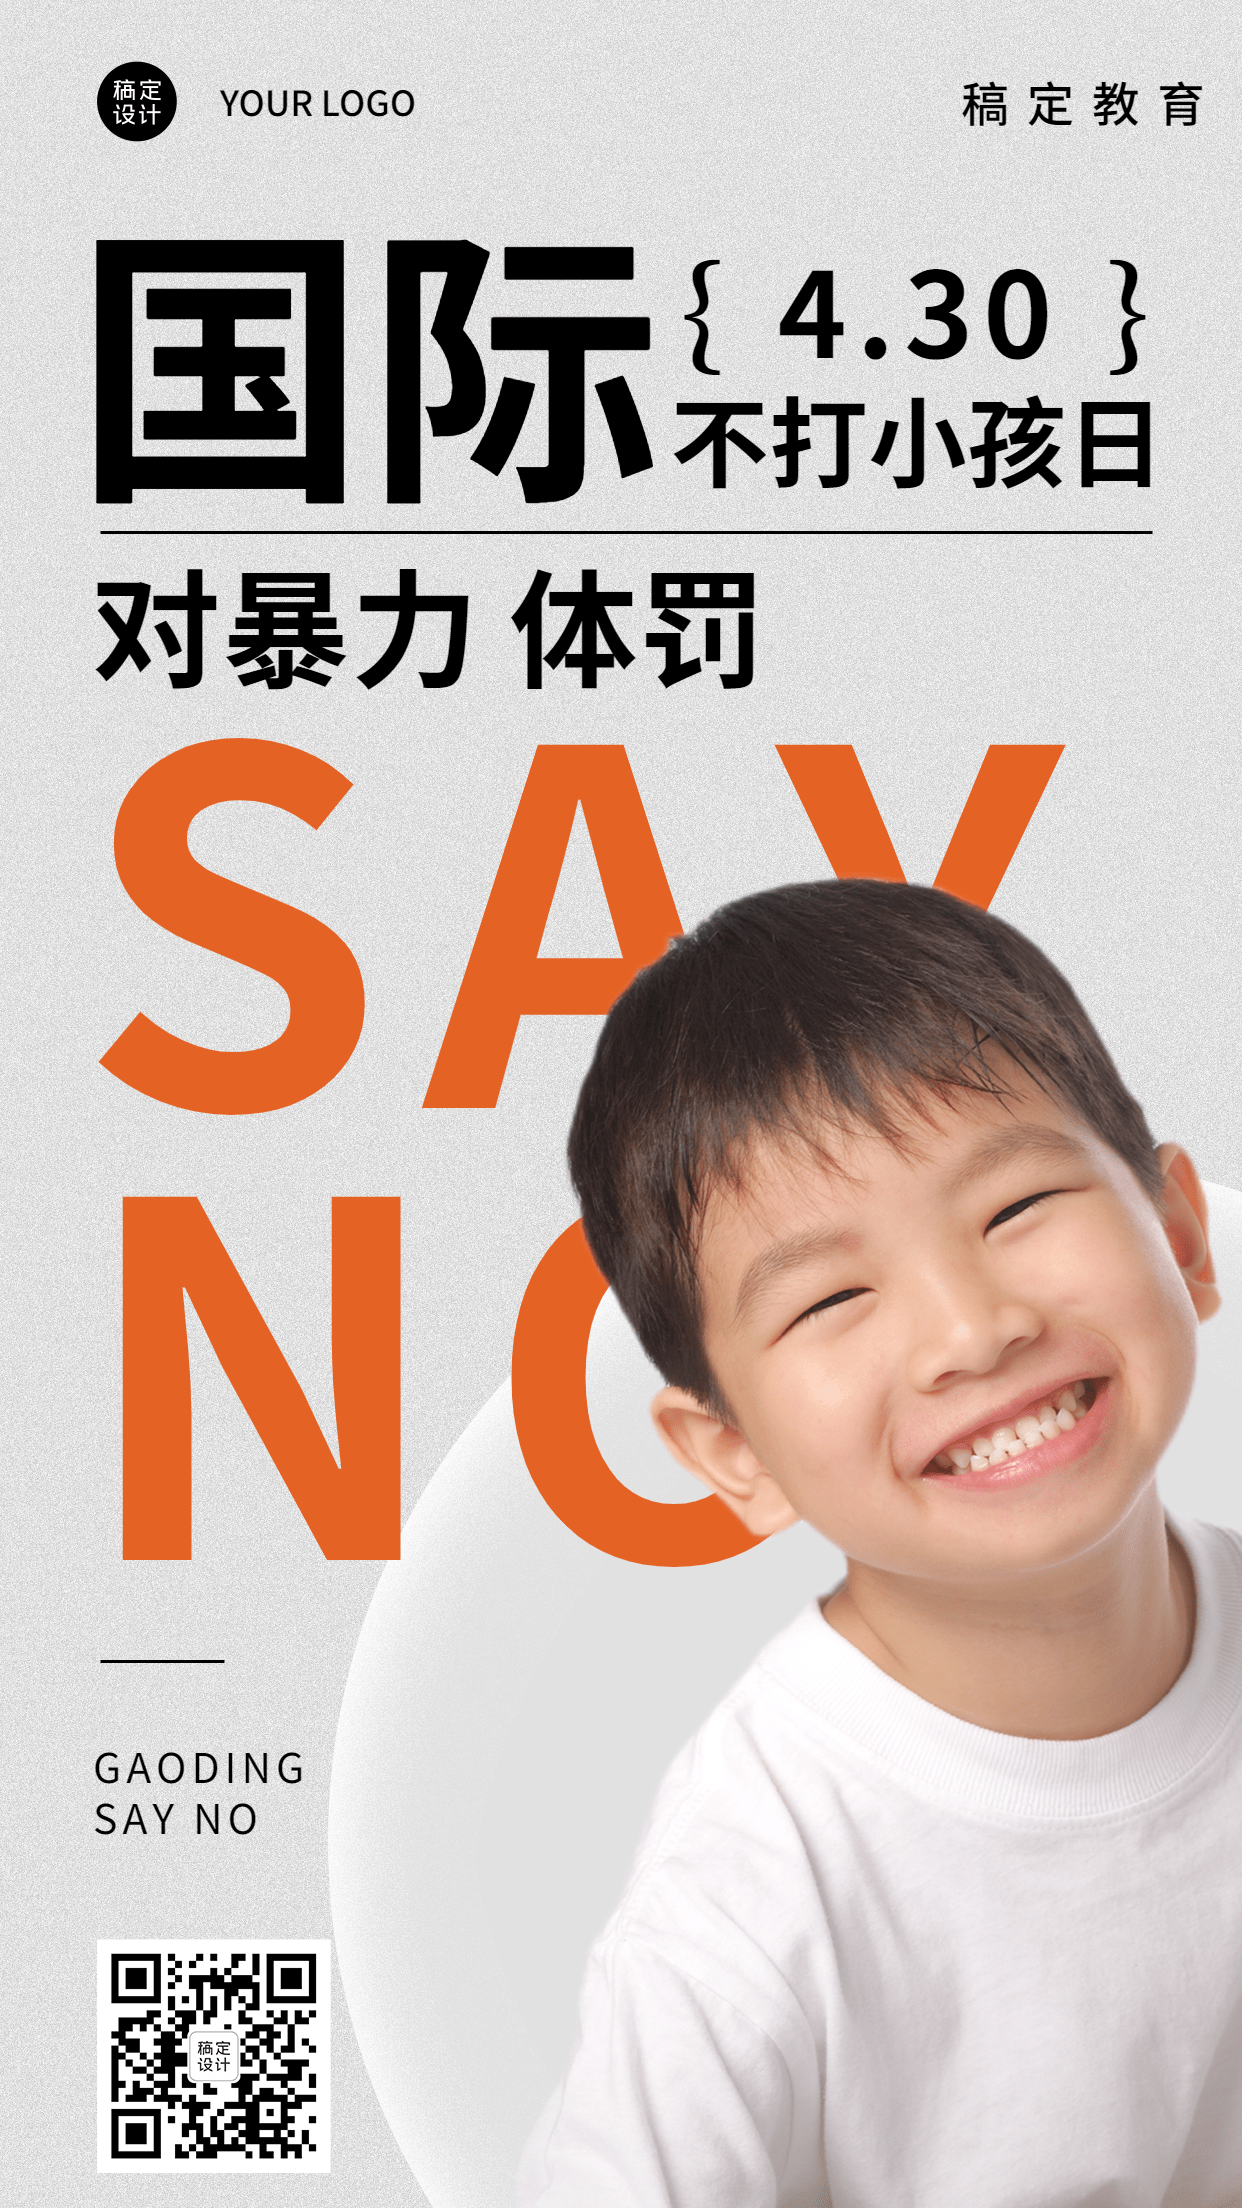 国际不打小孩日节日宣传排版手机海报